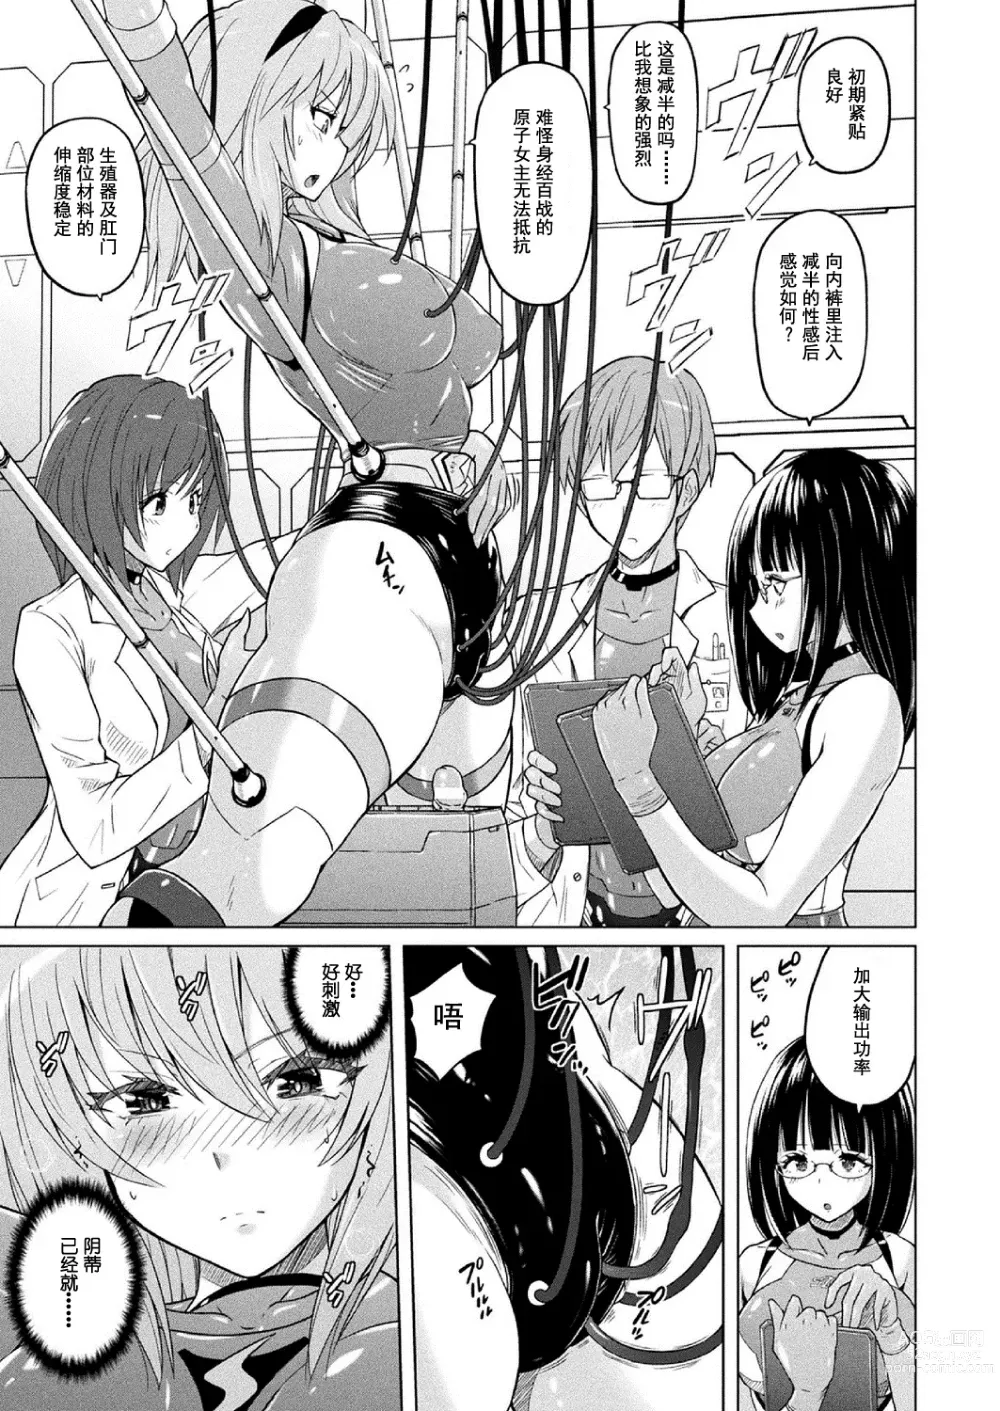 Page 6 of manga 胖次实验室 正篇+加笔【精神胡萝卜尚西·尚特耐脑控汉化】